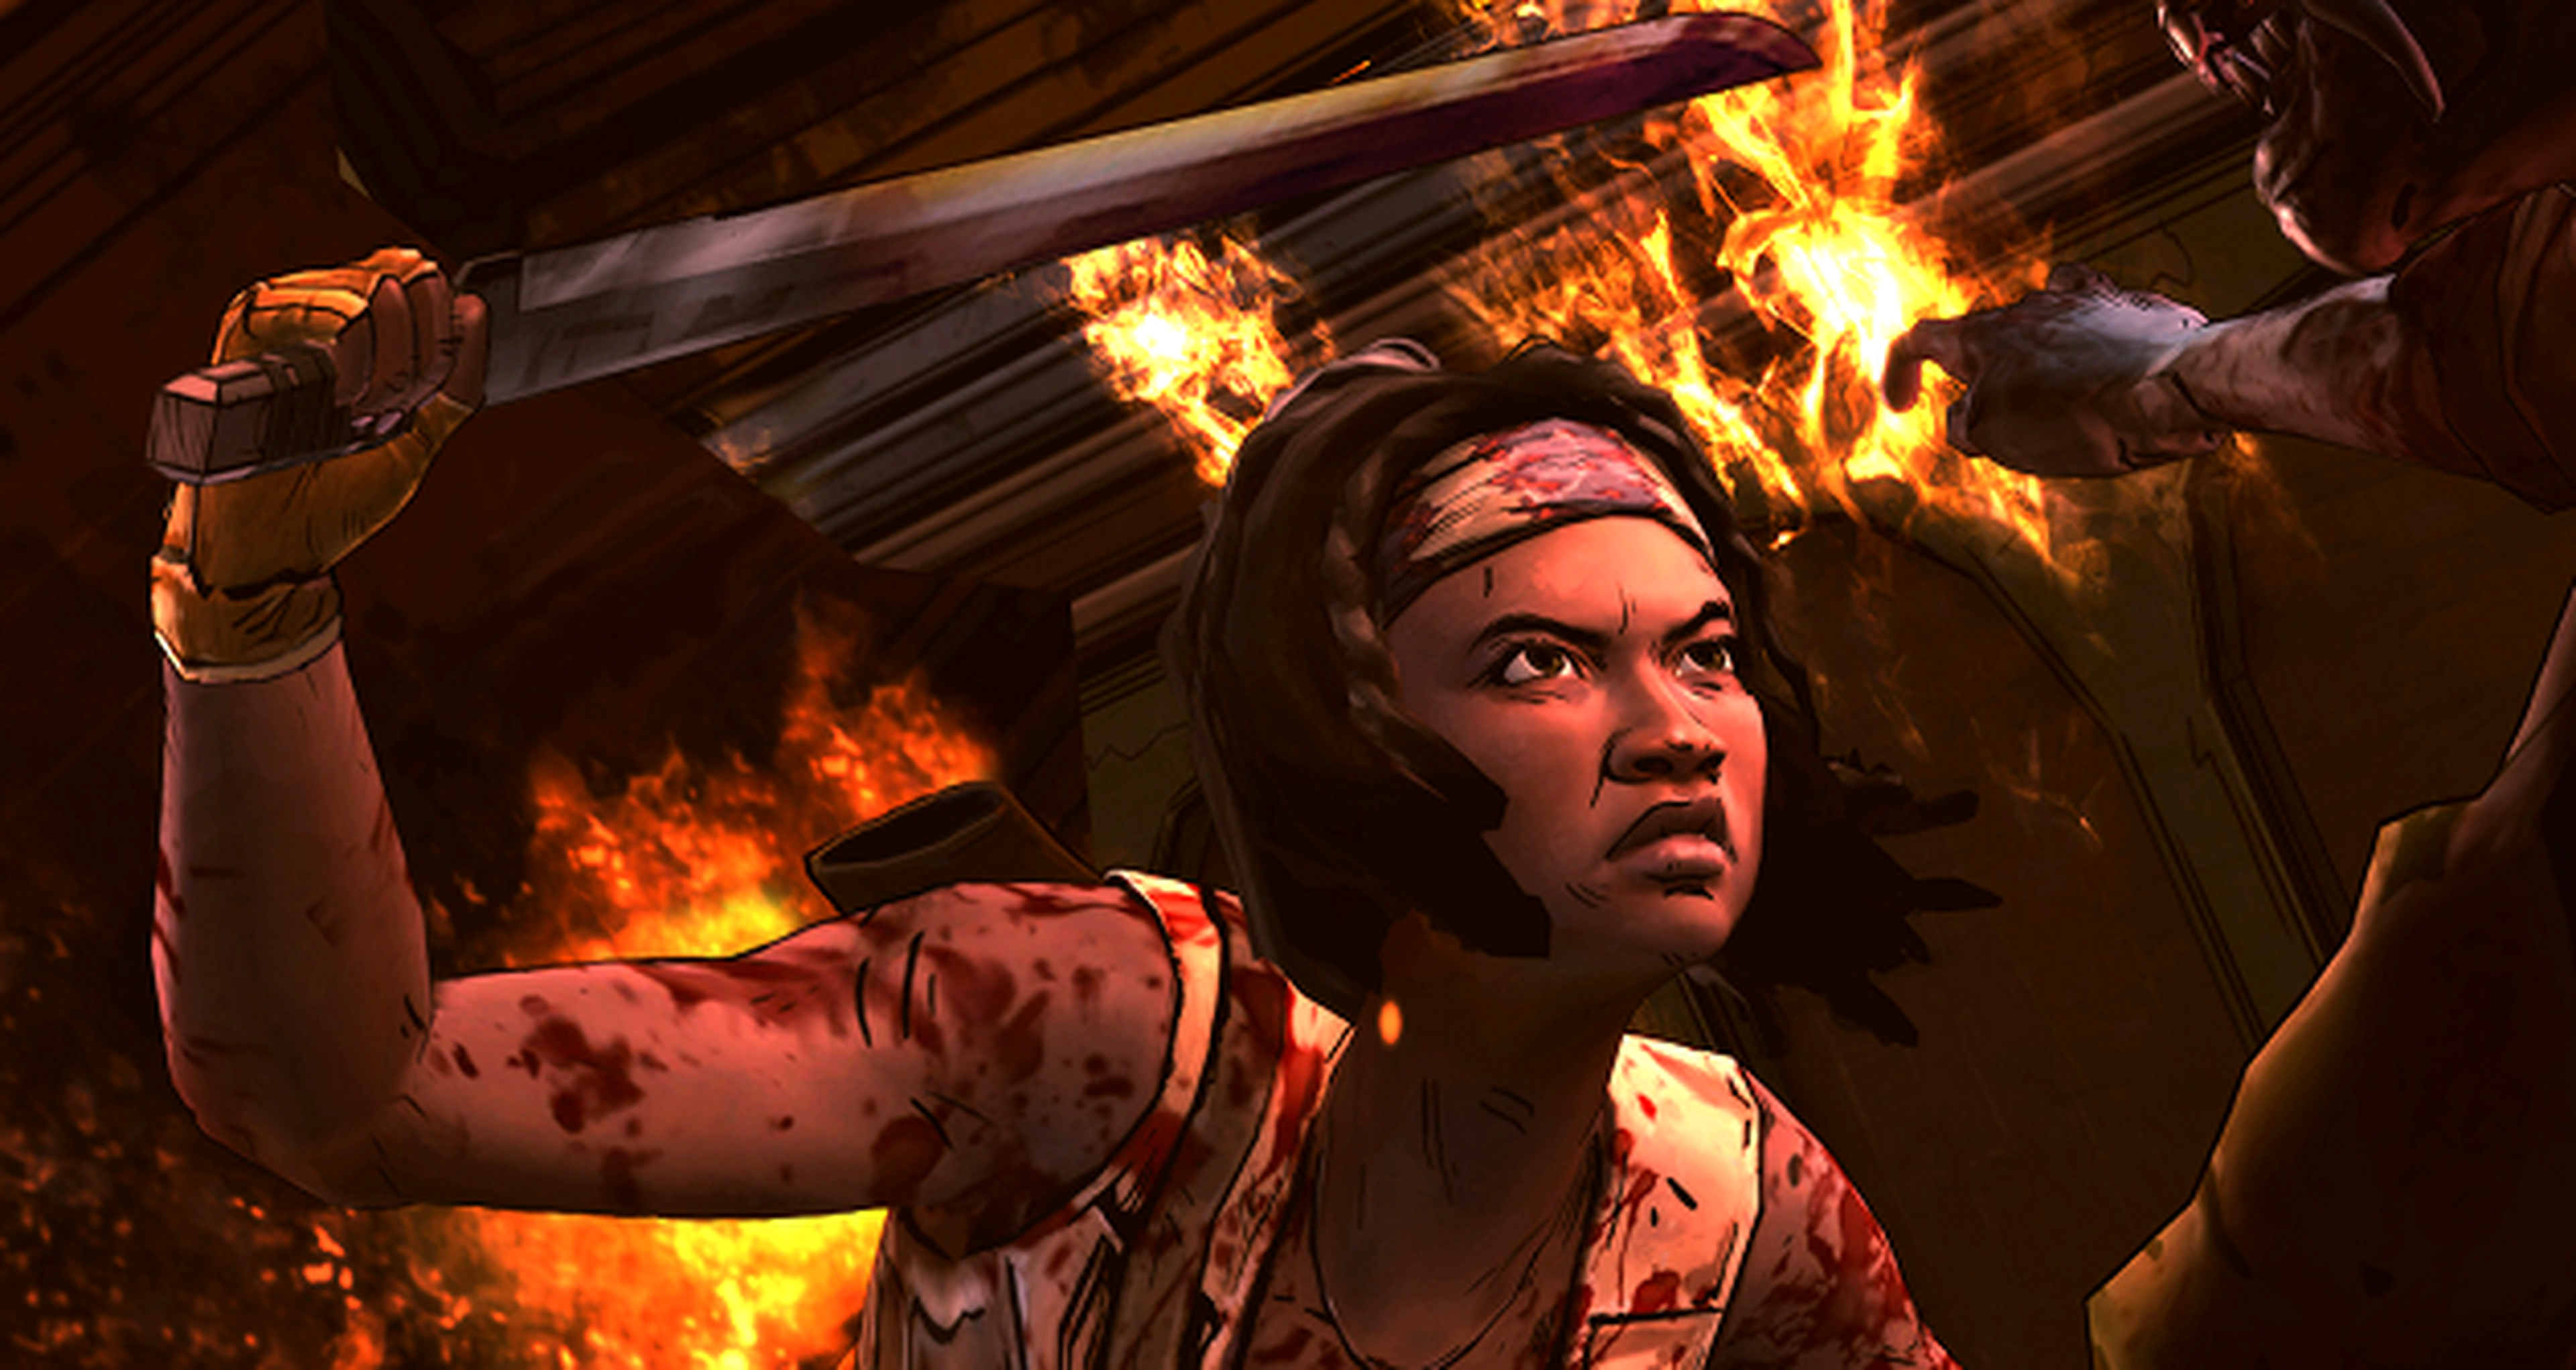 The Walking Dead Michonne: Episodio 3 What We Deserve - Fecha e imágenes